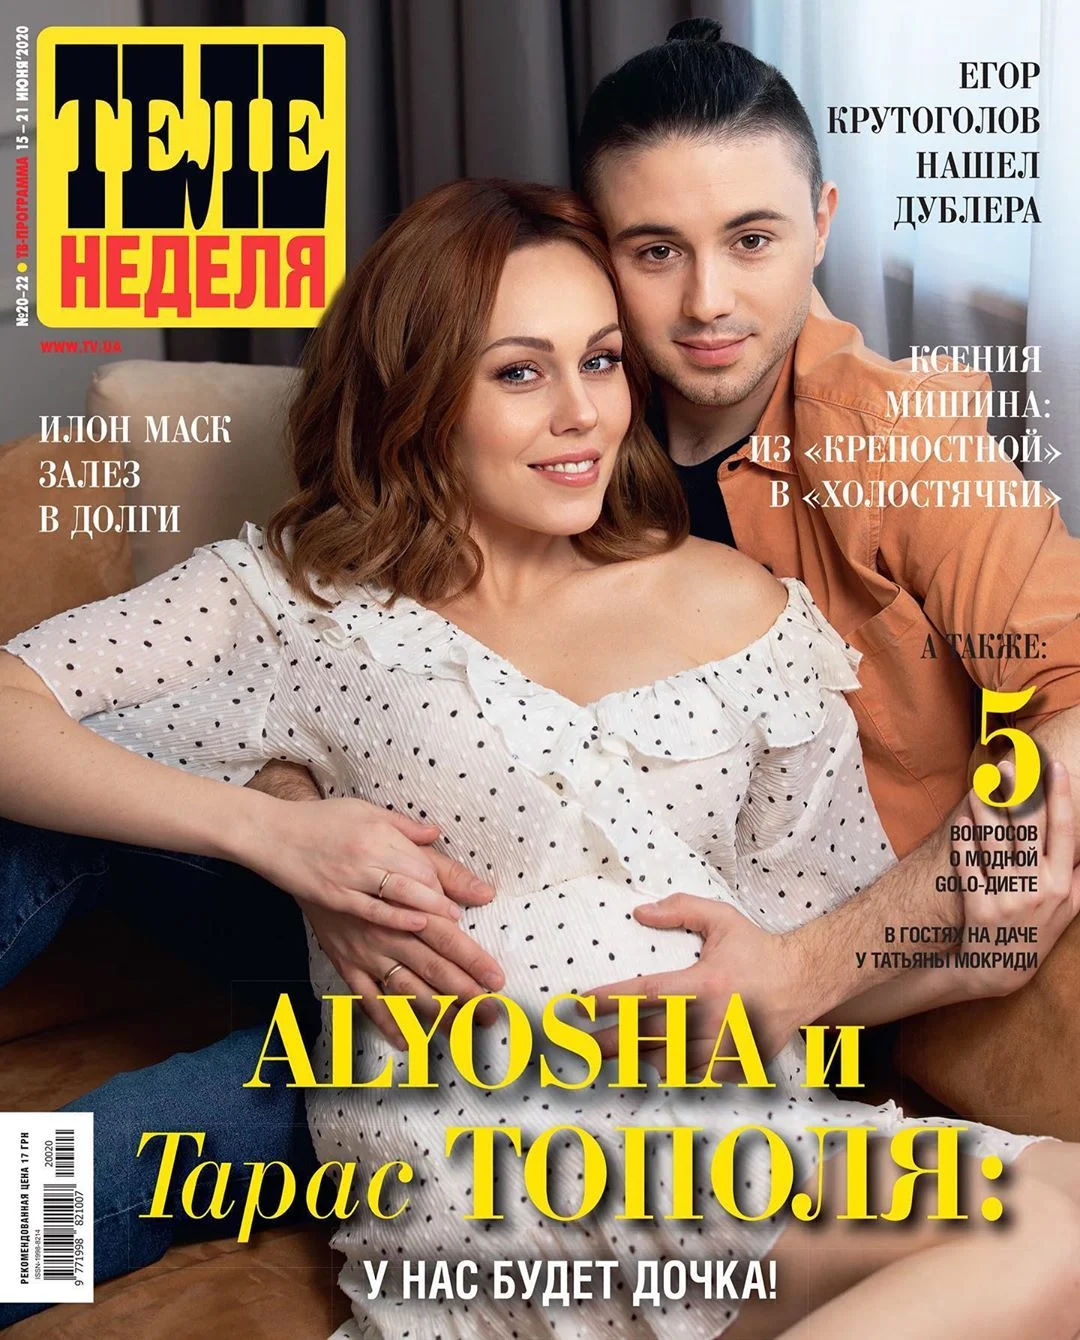 Беременная Alyosha украсила обложку известного журнала вместе с любимым Тарасом Тополей - фото 480946